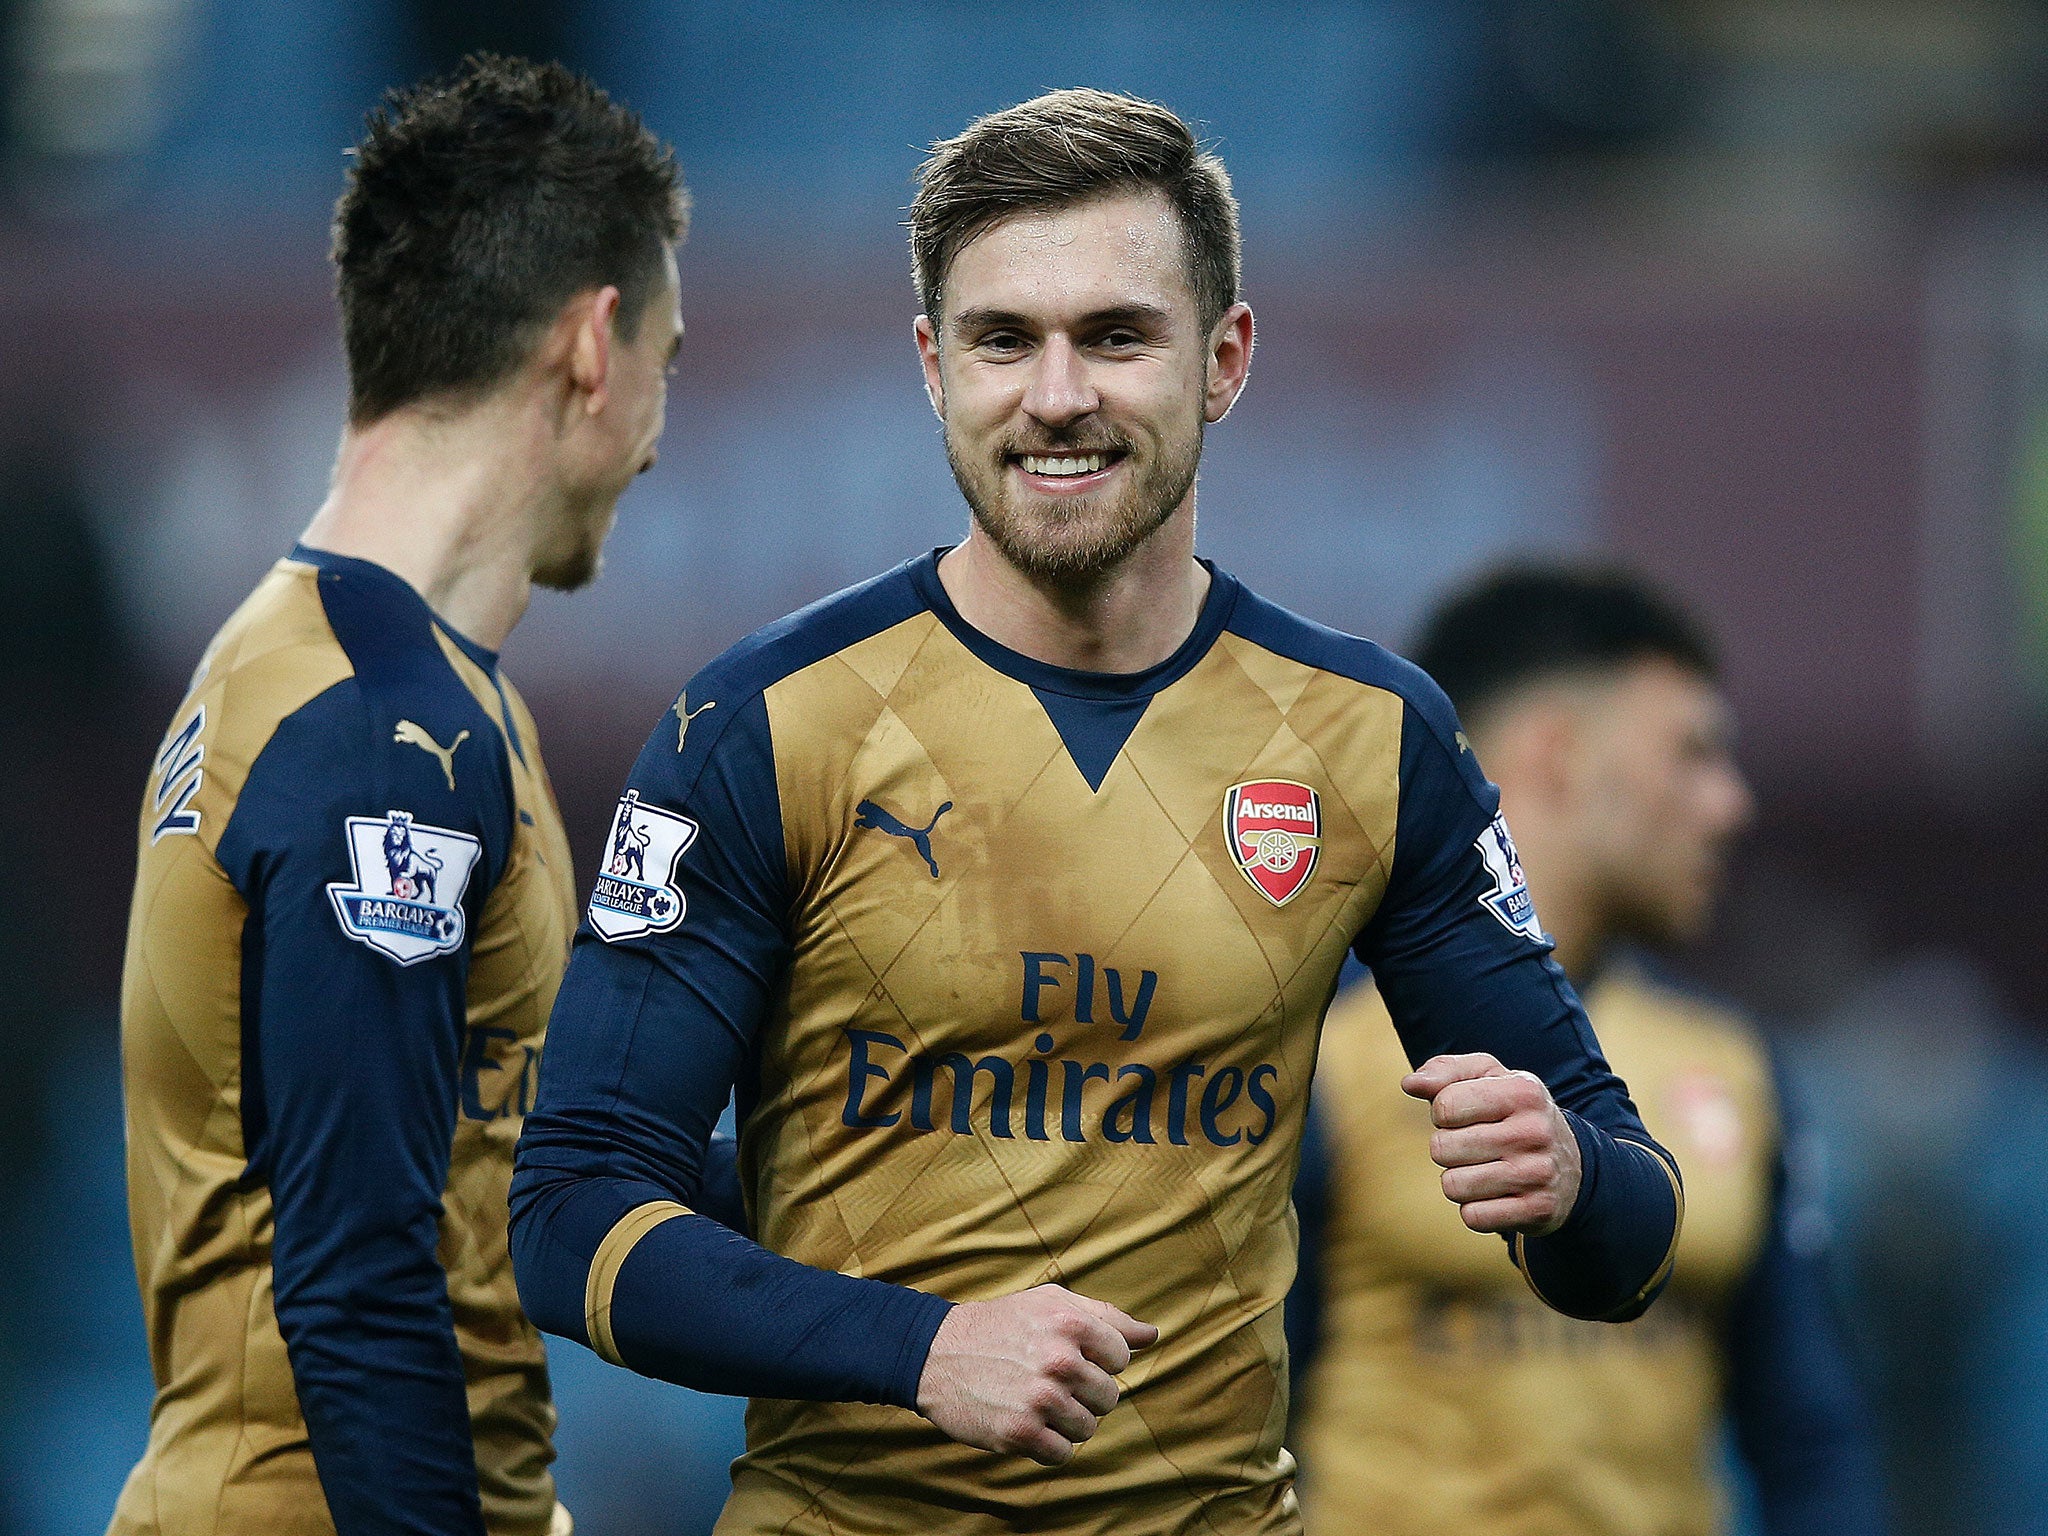 Arsenal midfielder Aaron Ramsey celebrates scoring against Aston Villa